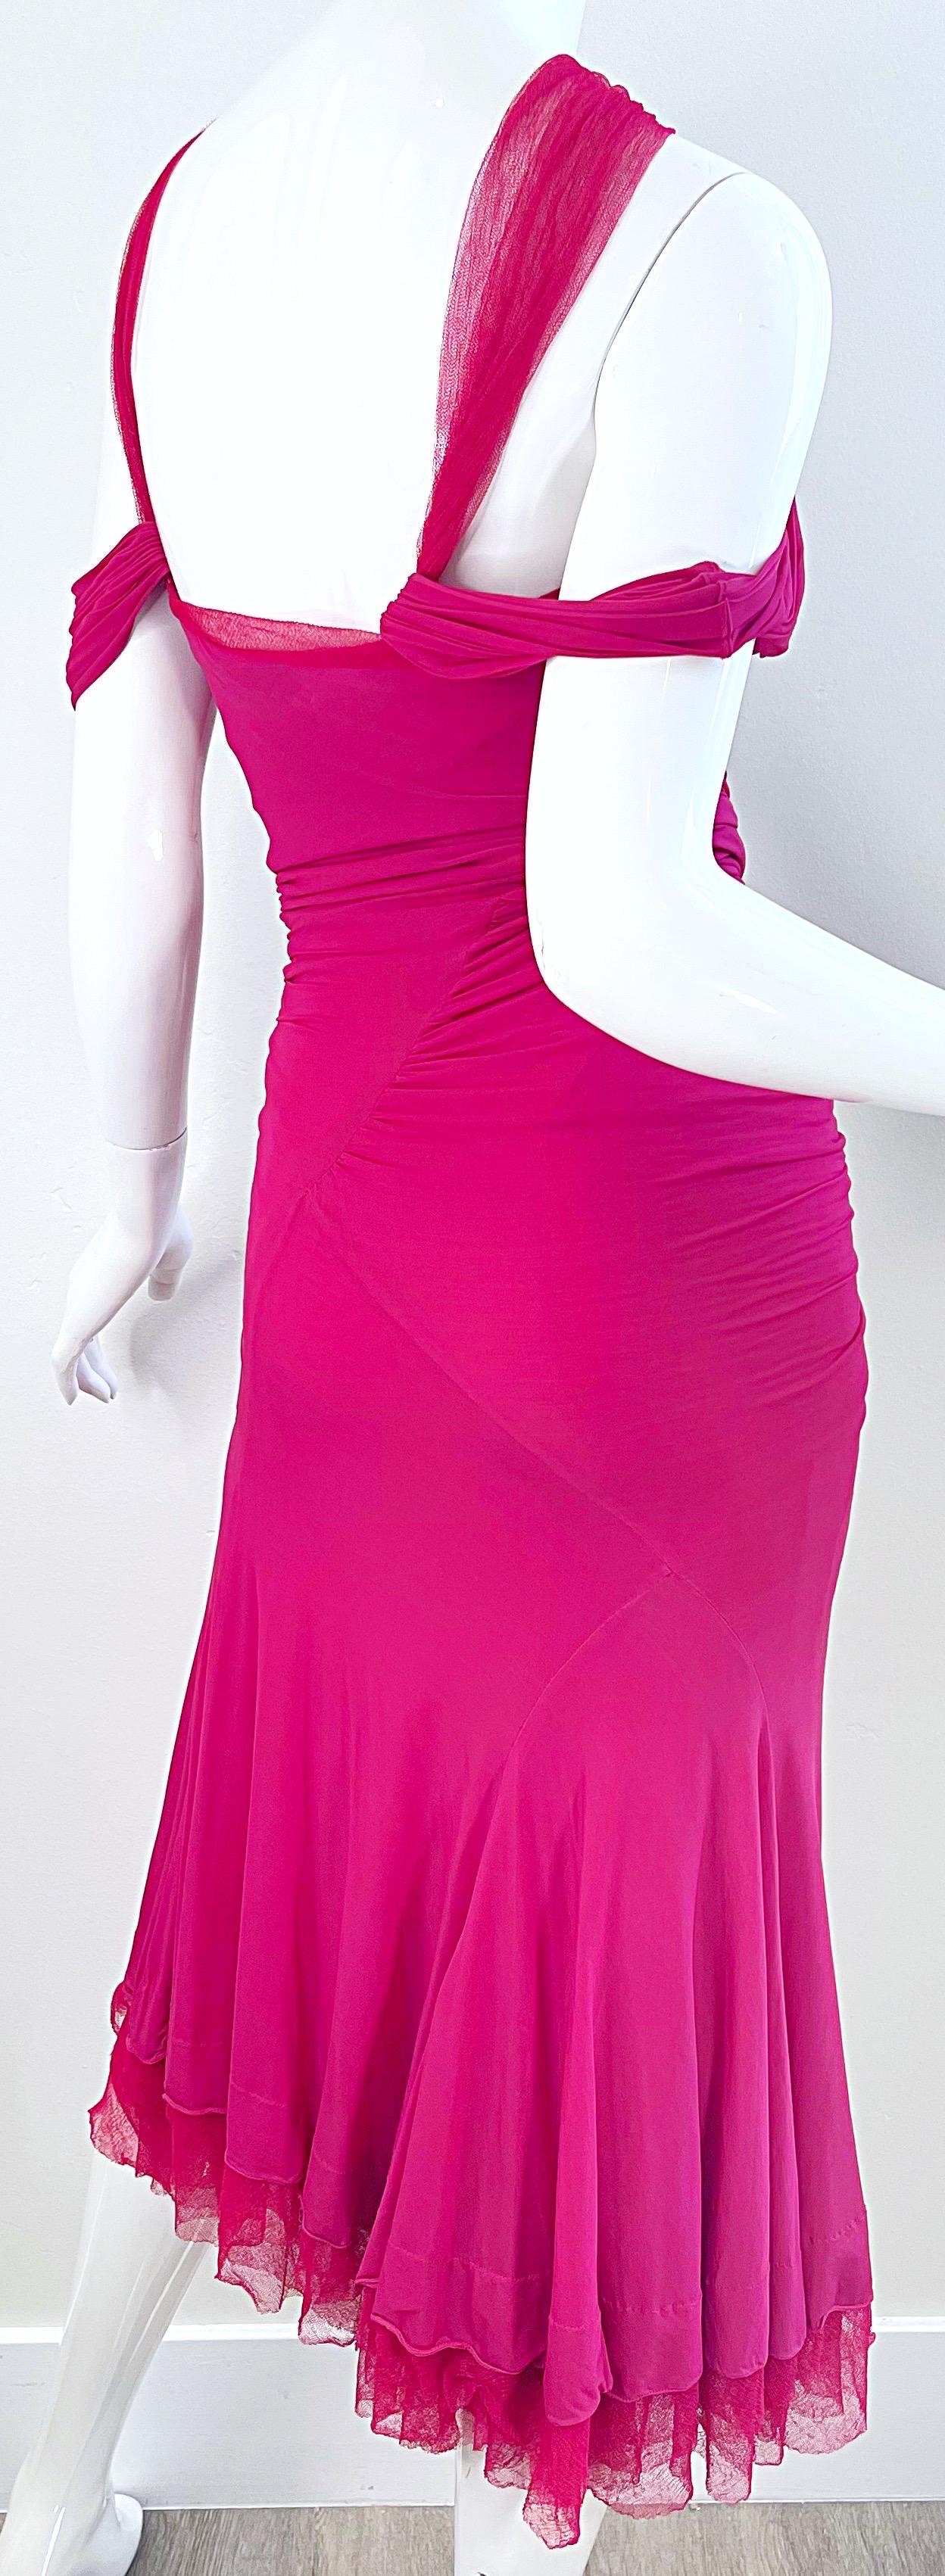 Donna Karan Runway Fall 2004 Hot Pink Off Shoulder Vintage Jersey Tulle Dress For Sale 8